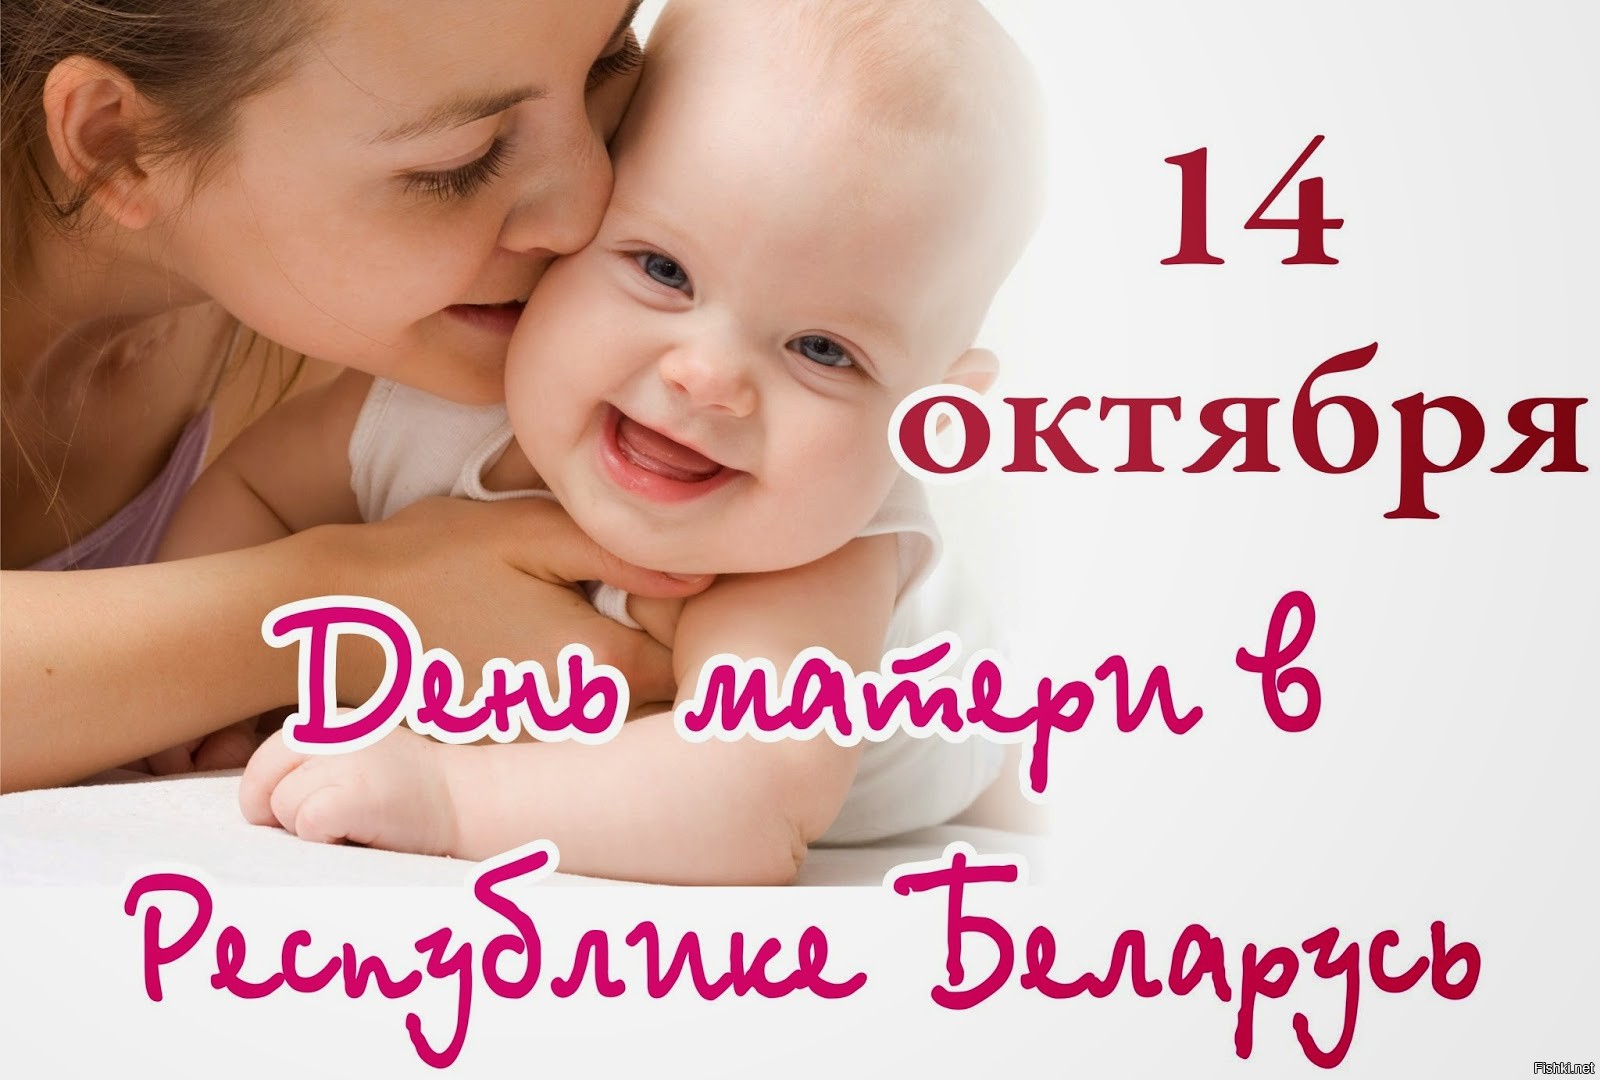 Как празднуют день матери в россии